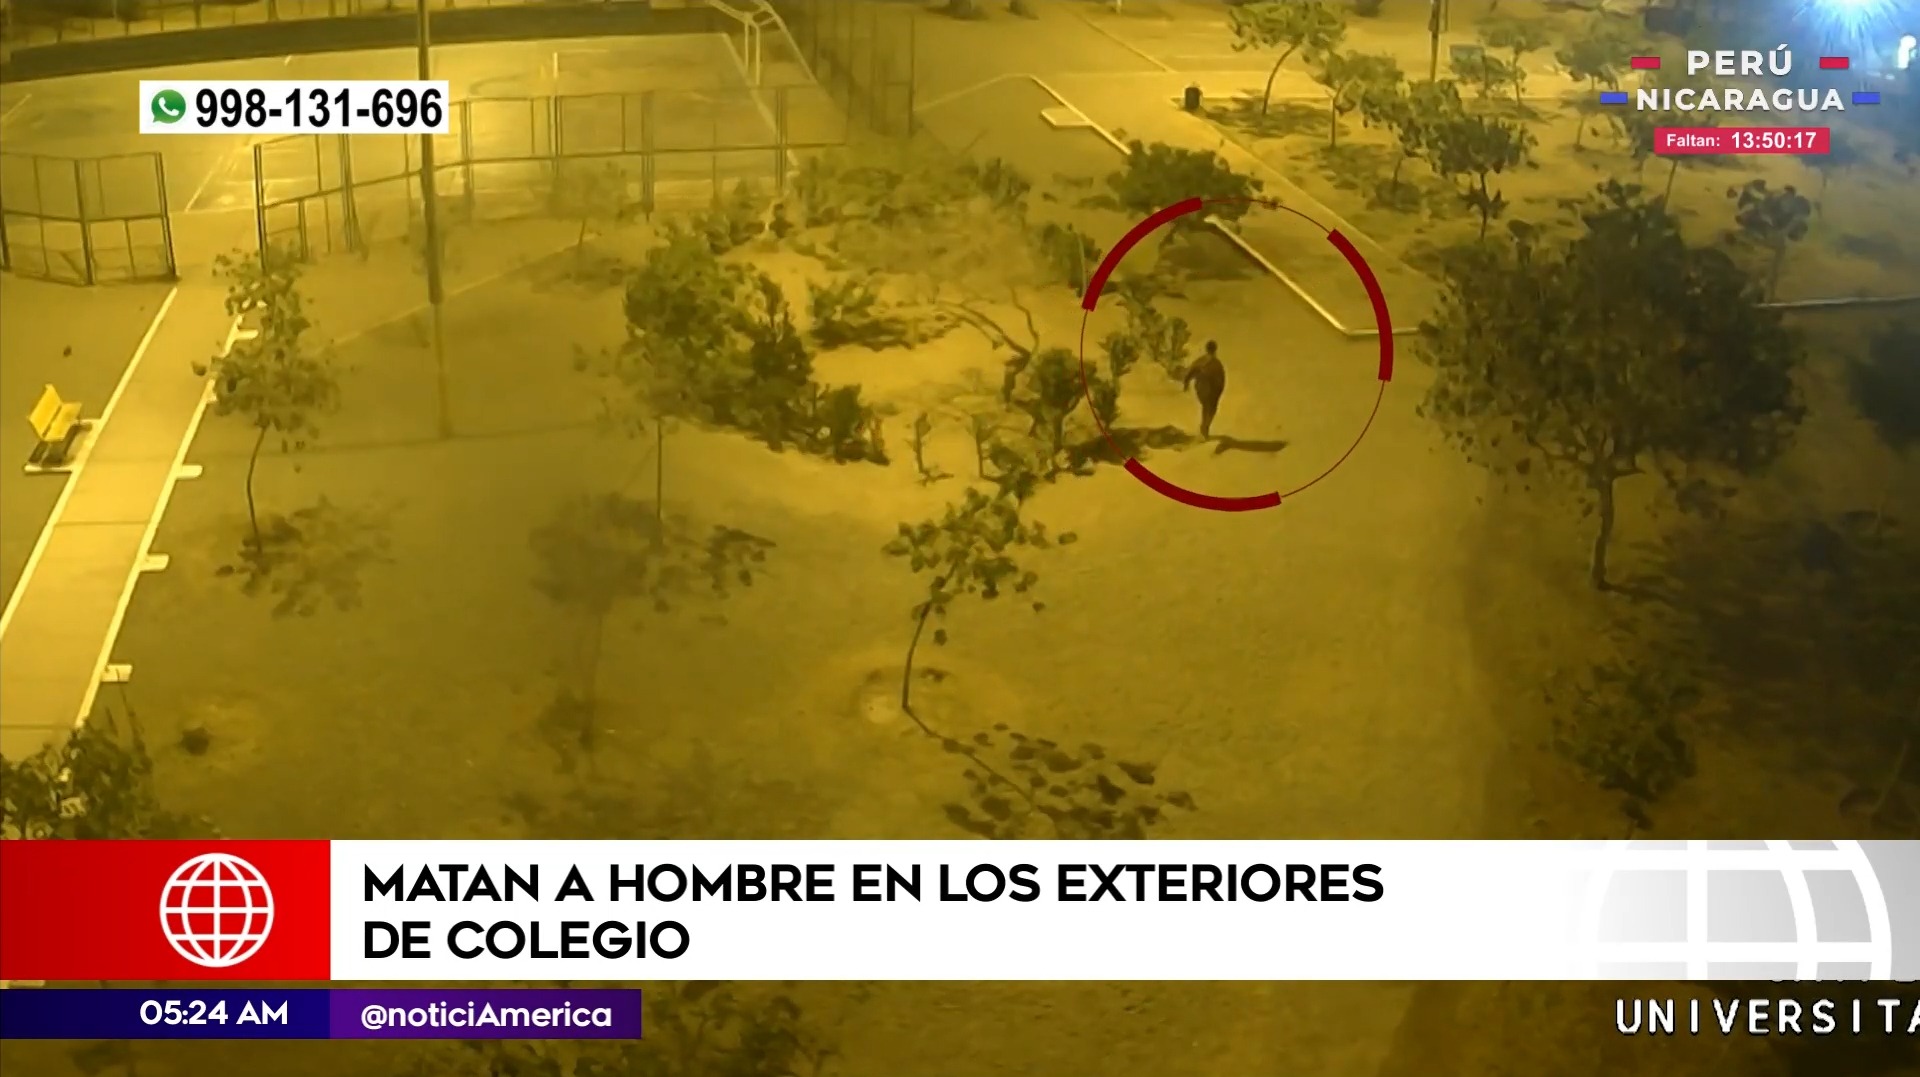 Asesinato en Comas. Foto: América Noticias